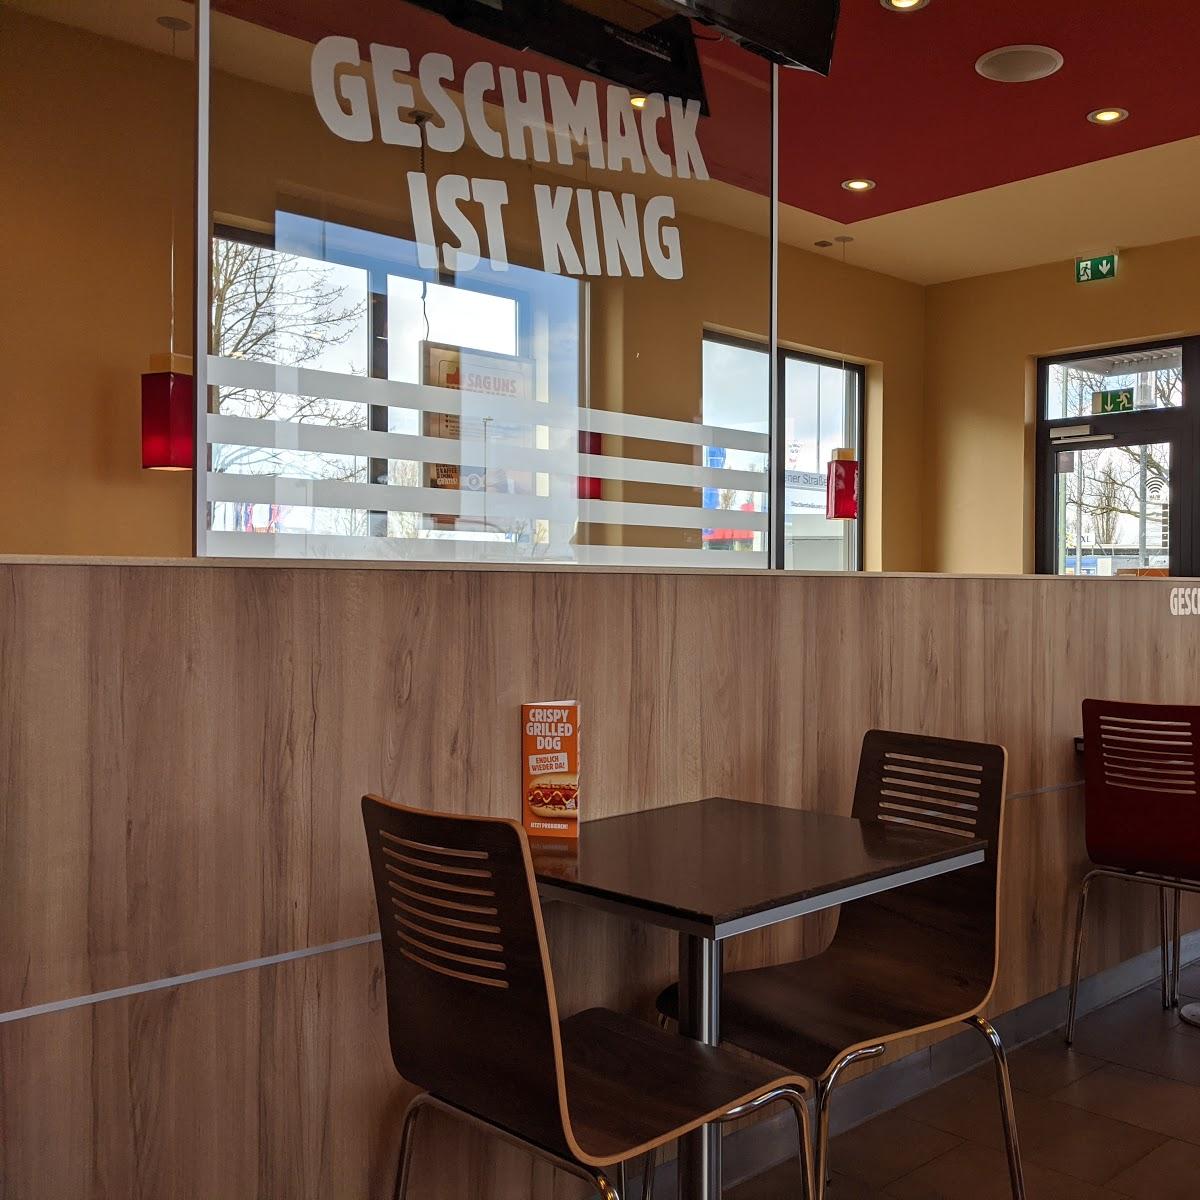 Restaurant "BURGER KING Deutschland GmbH" in Wedel